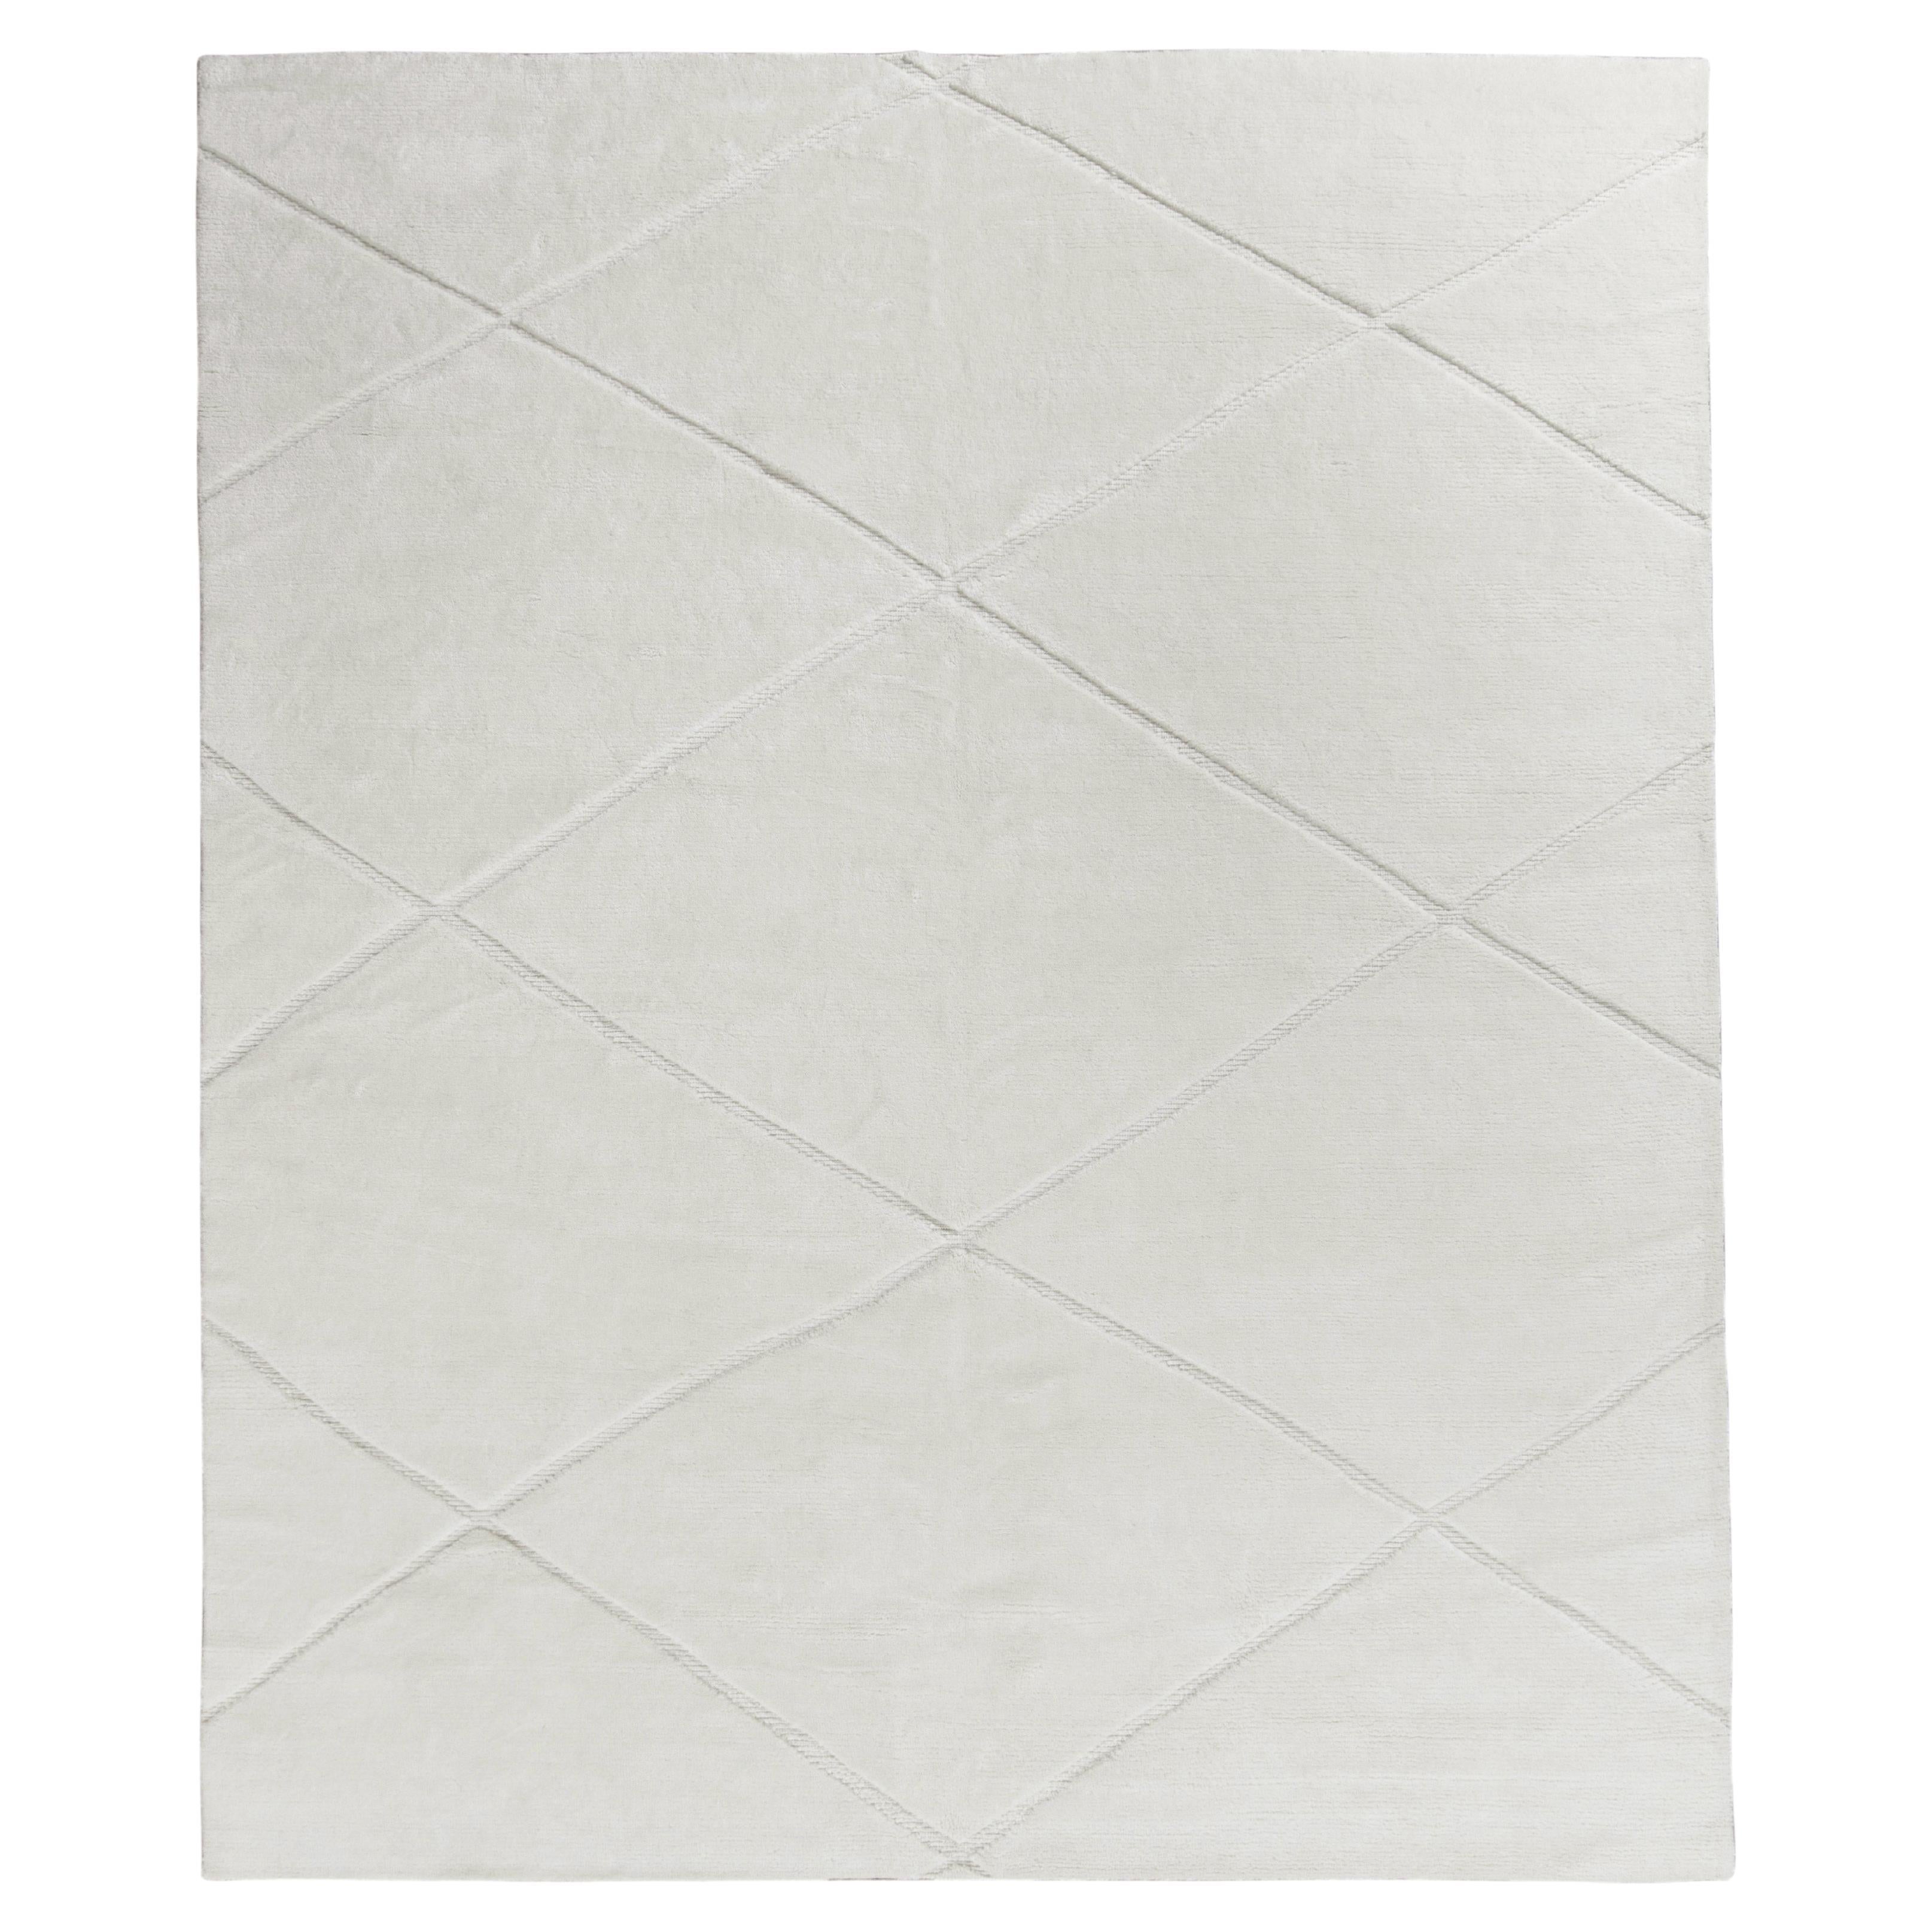 Rug & Kilim’s Modern Custom Rug in all White, High-Low Geometric Pattern